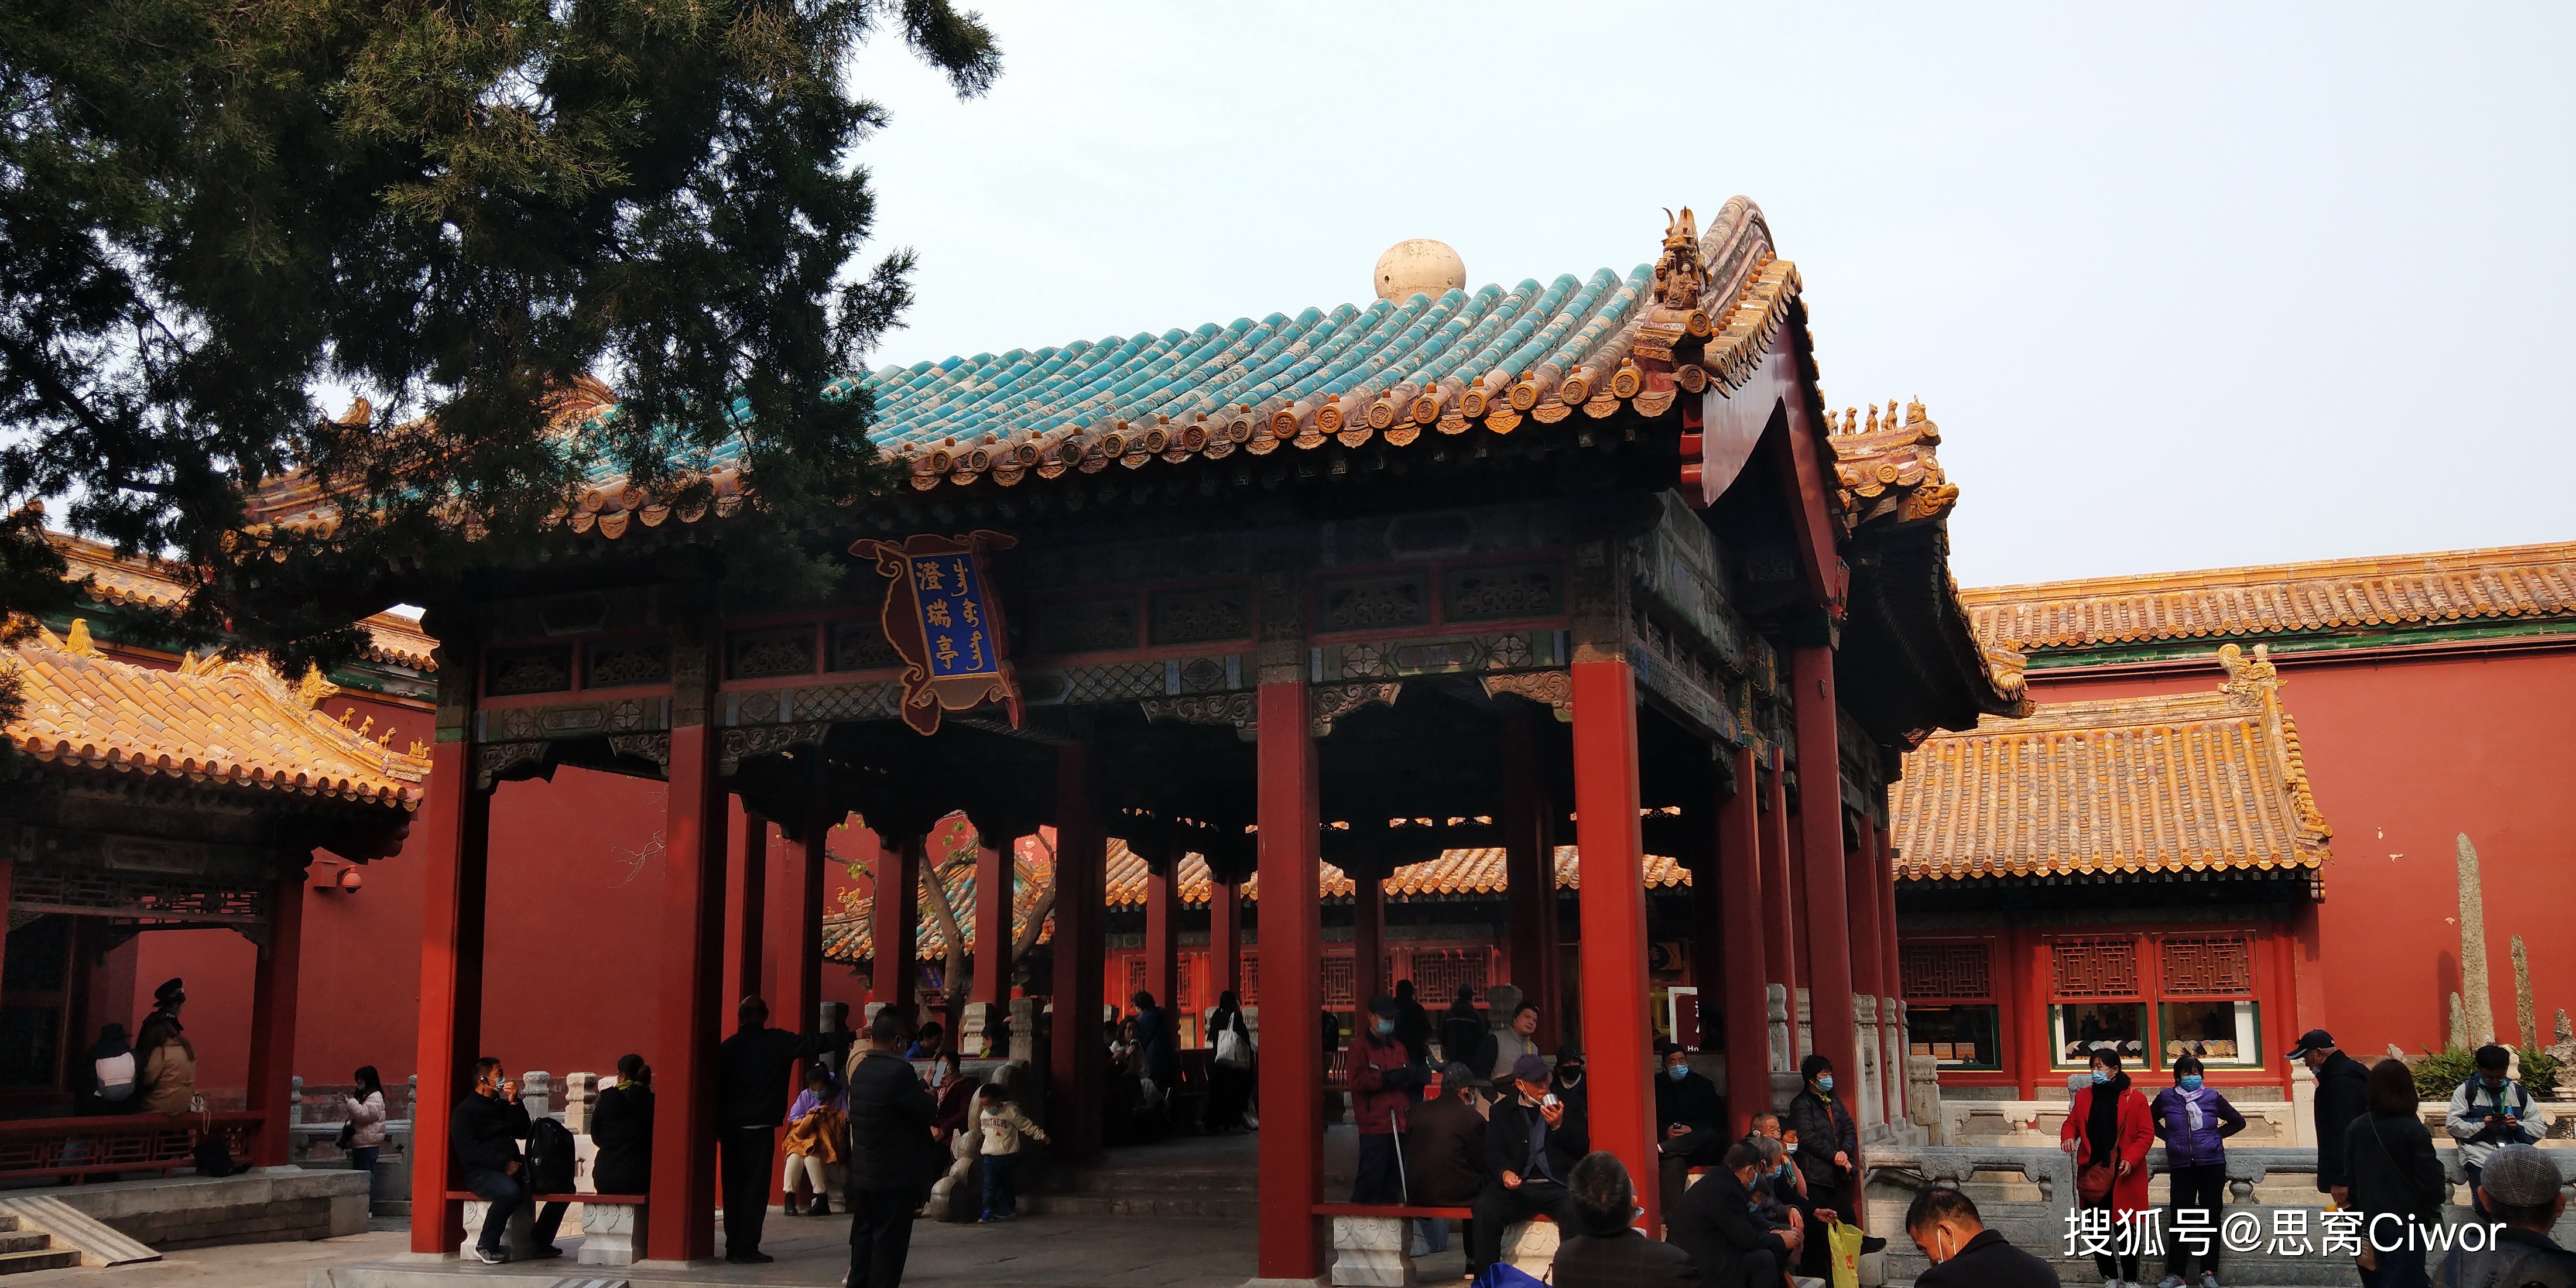 午门是故宫的正门,俗称五凤楼.